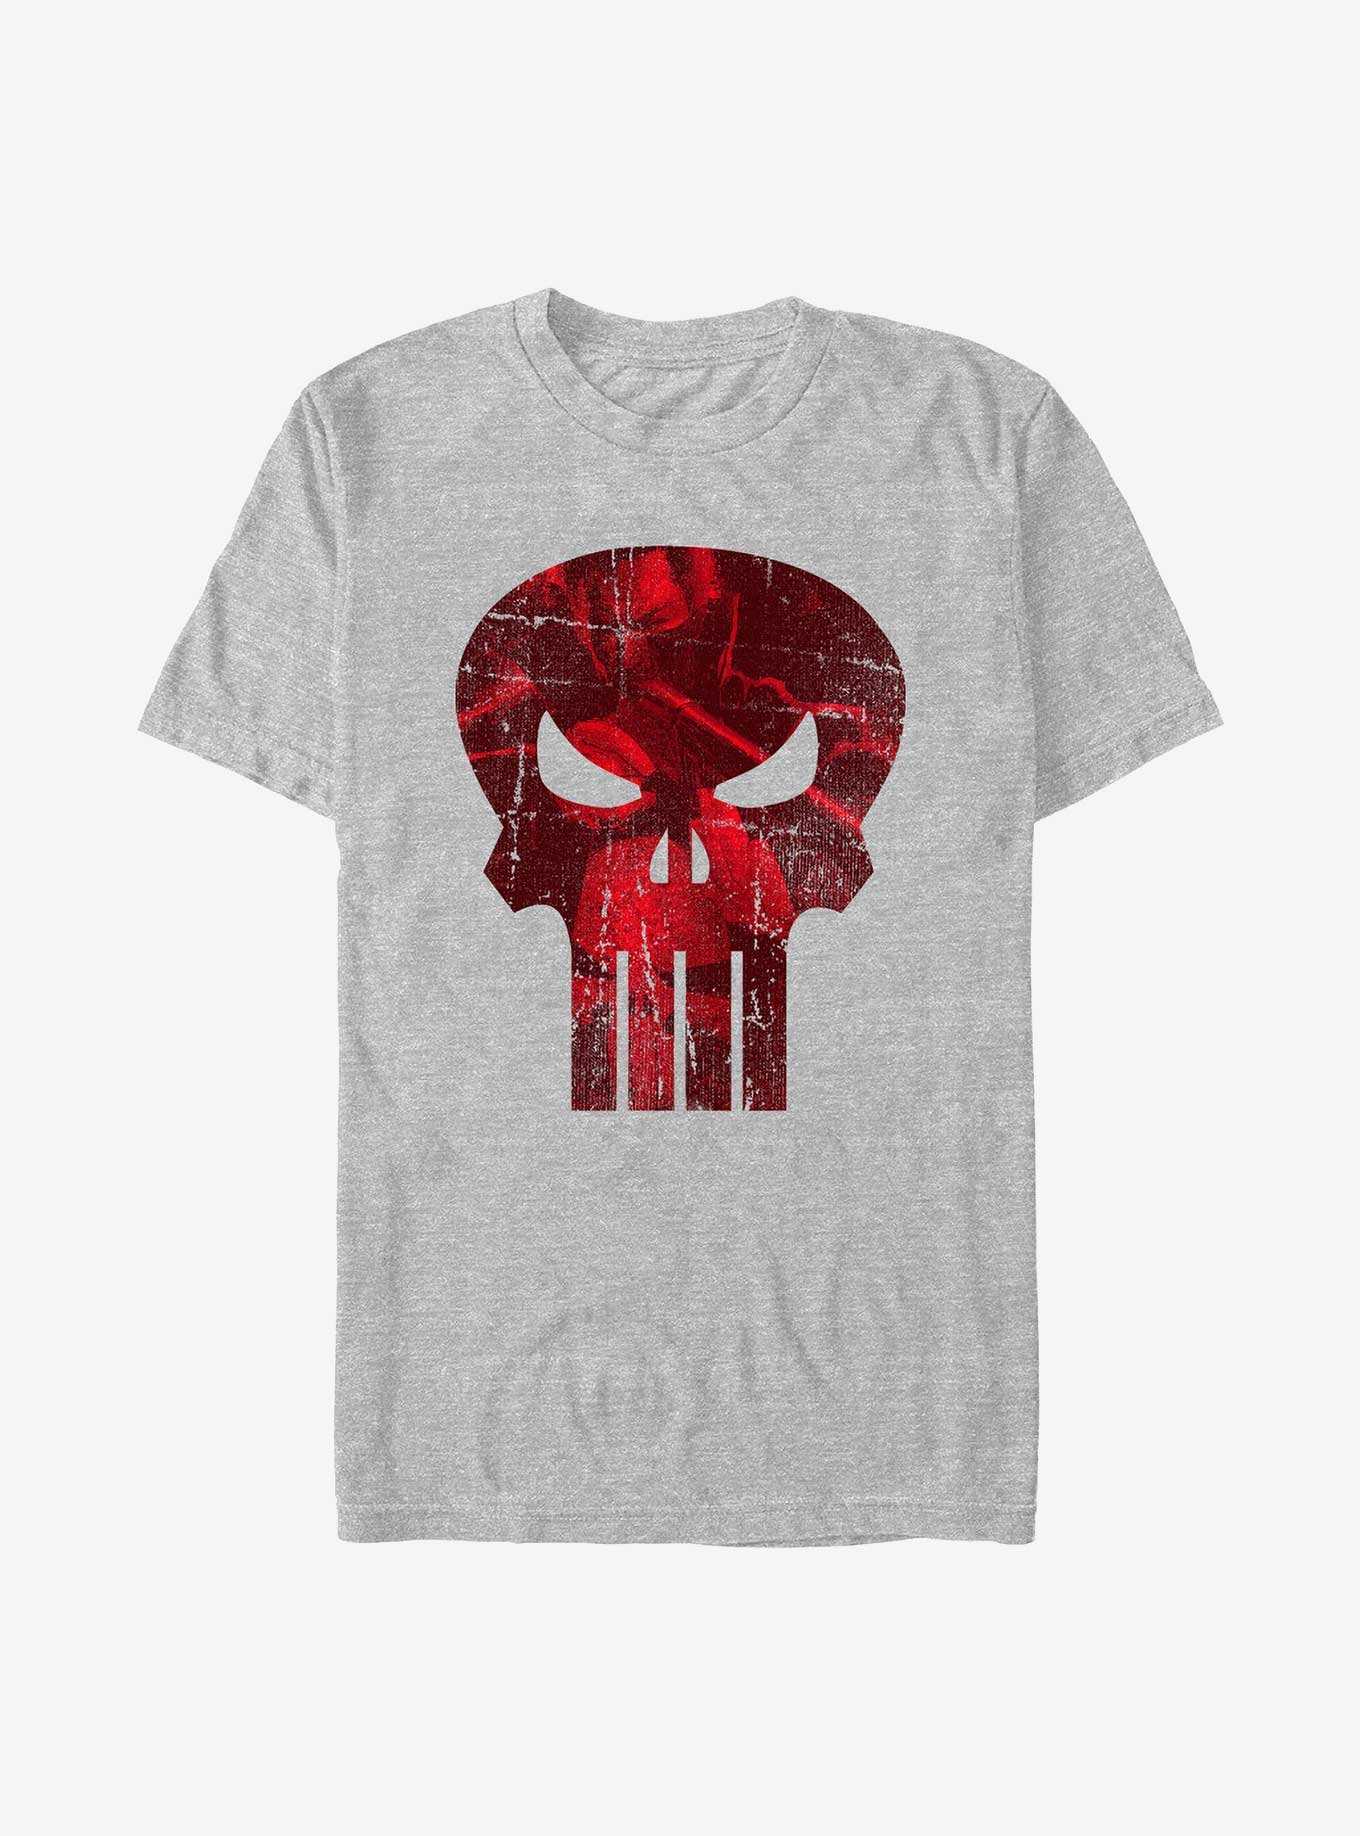 Marvel Punisher Logo Filled With Rage T-Shirt, , hi-res